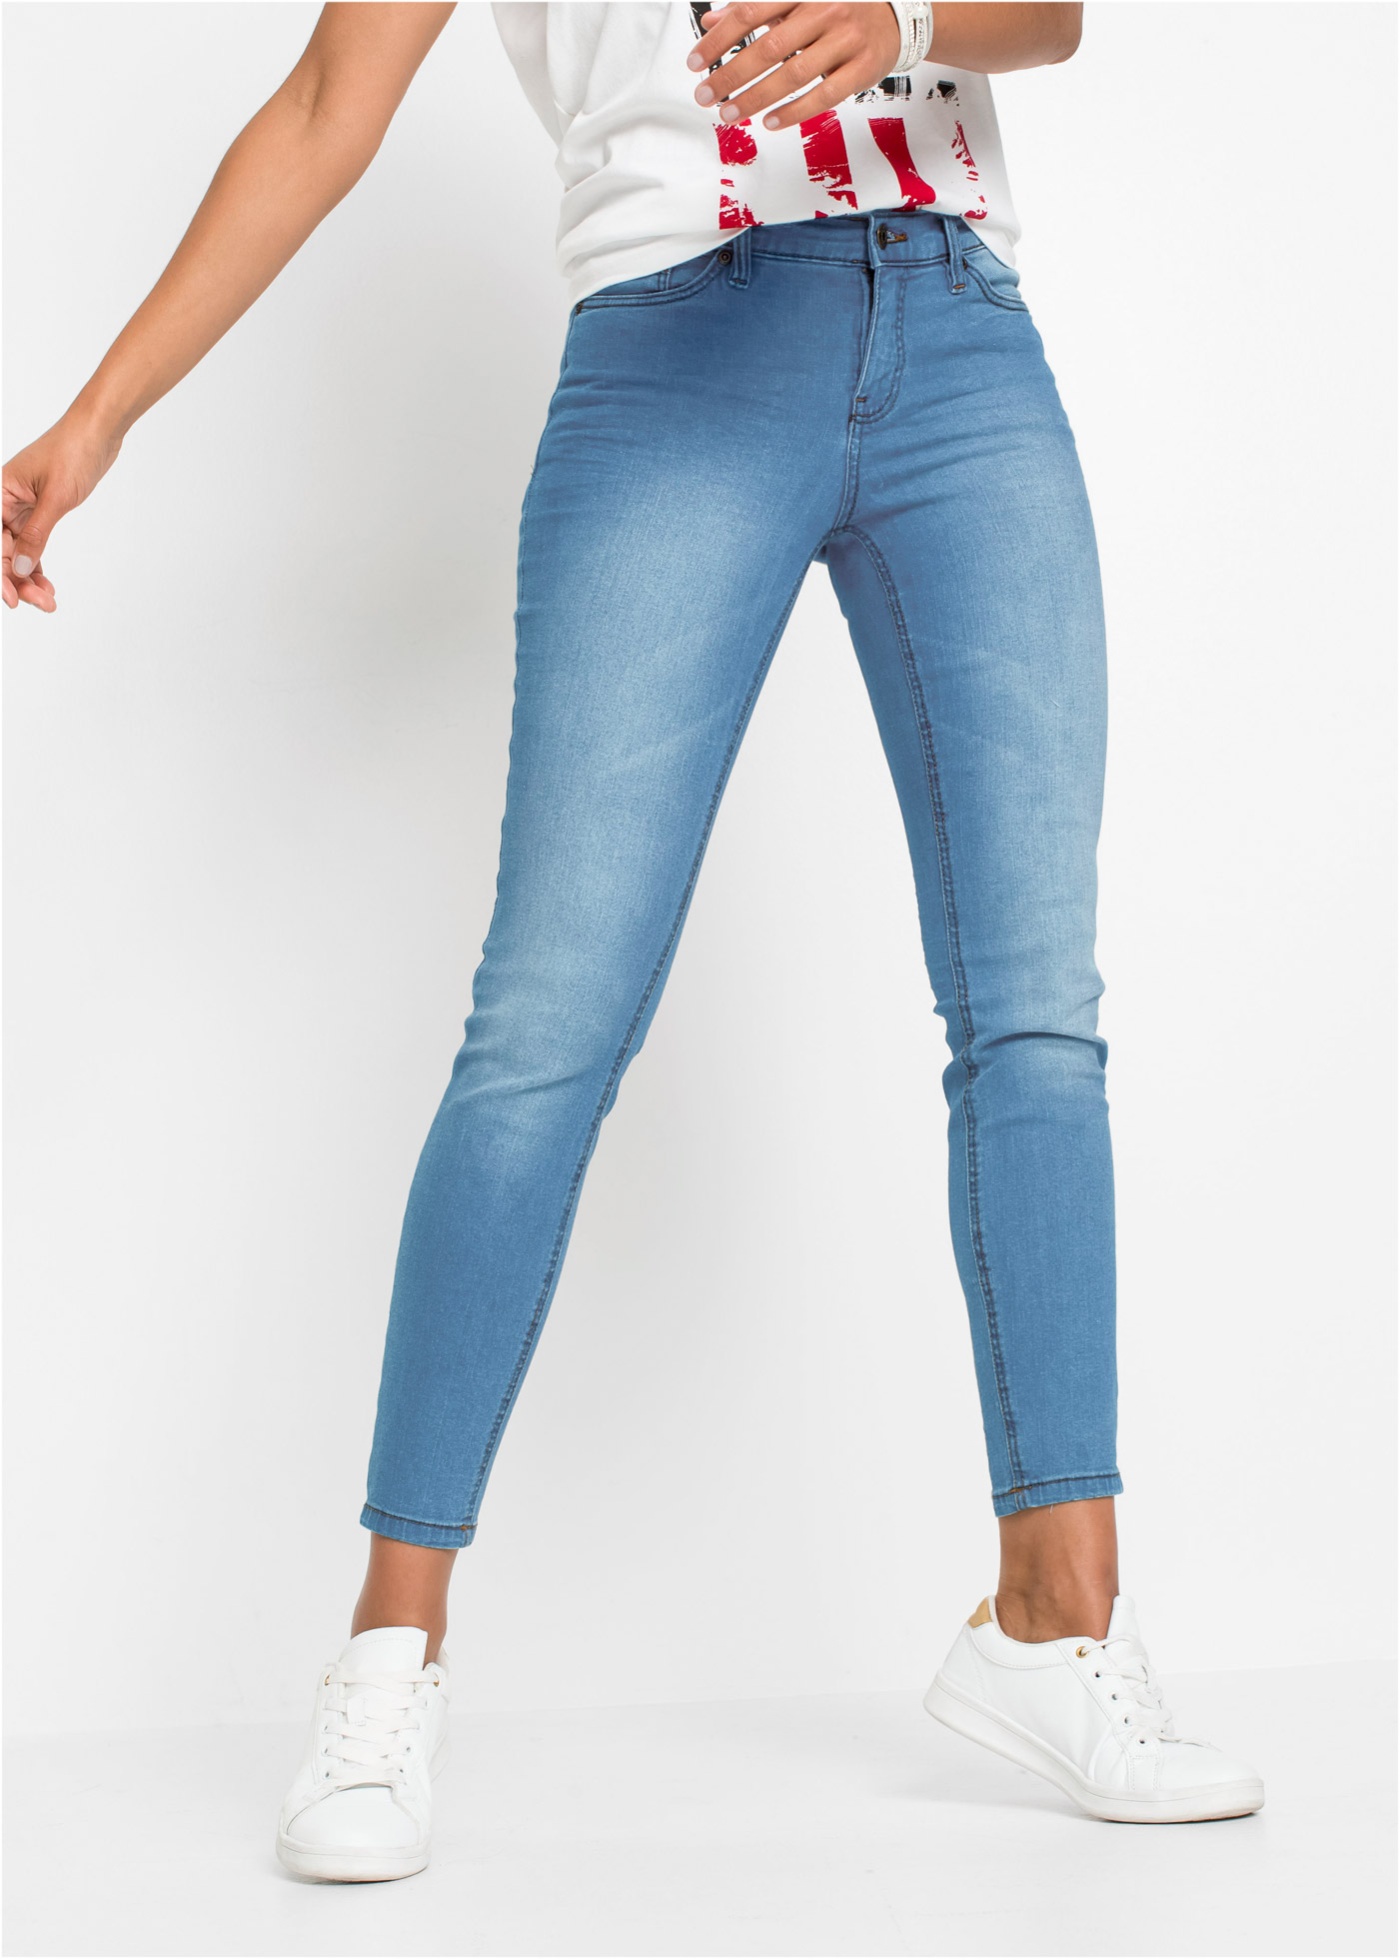 926935 Bonprix джинсы skinny синий выбеленный